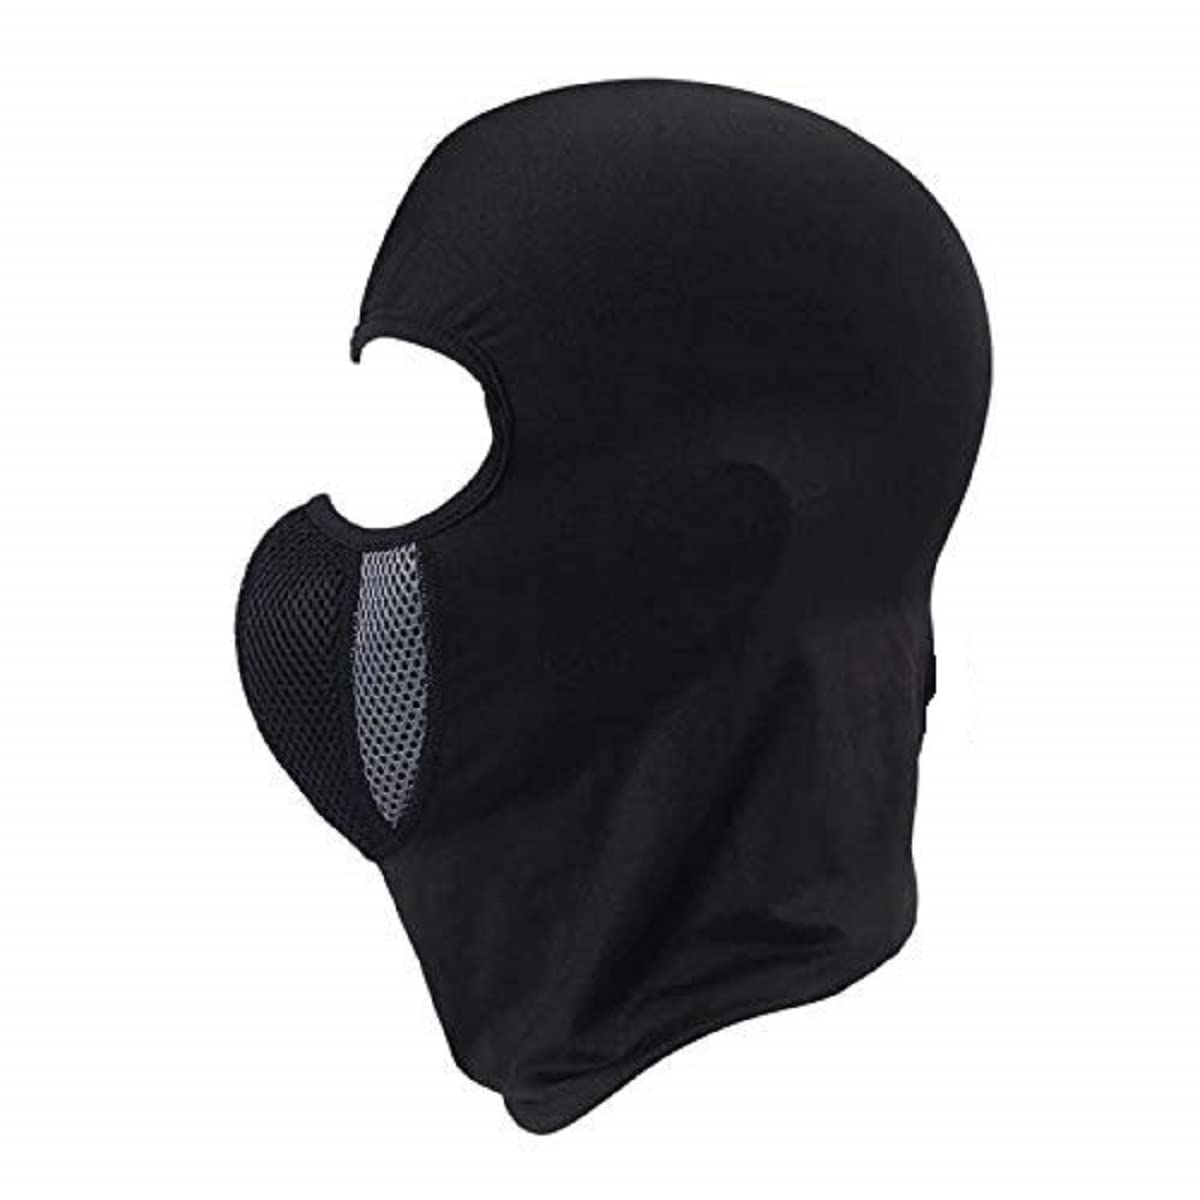 Full Cover Face Mask for Bike Riding Under Helmet